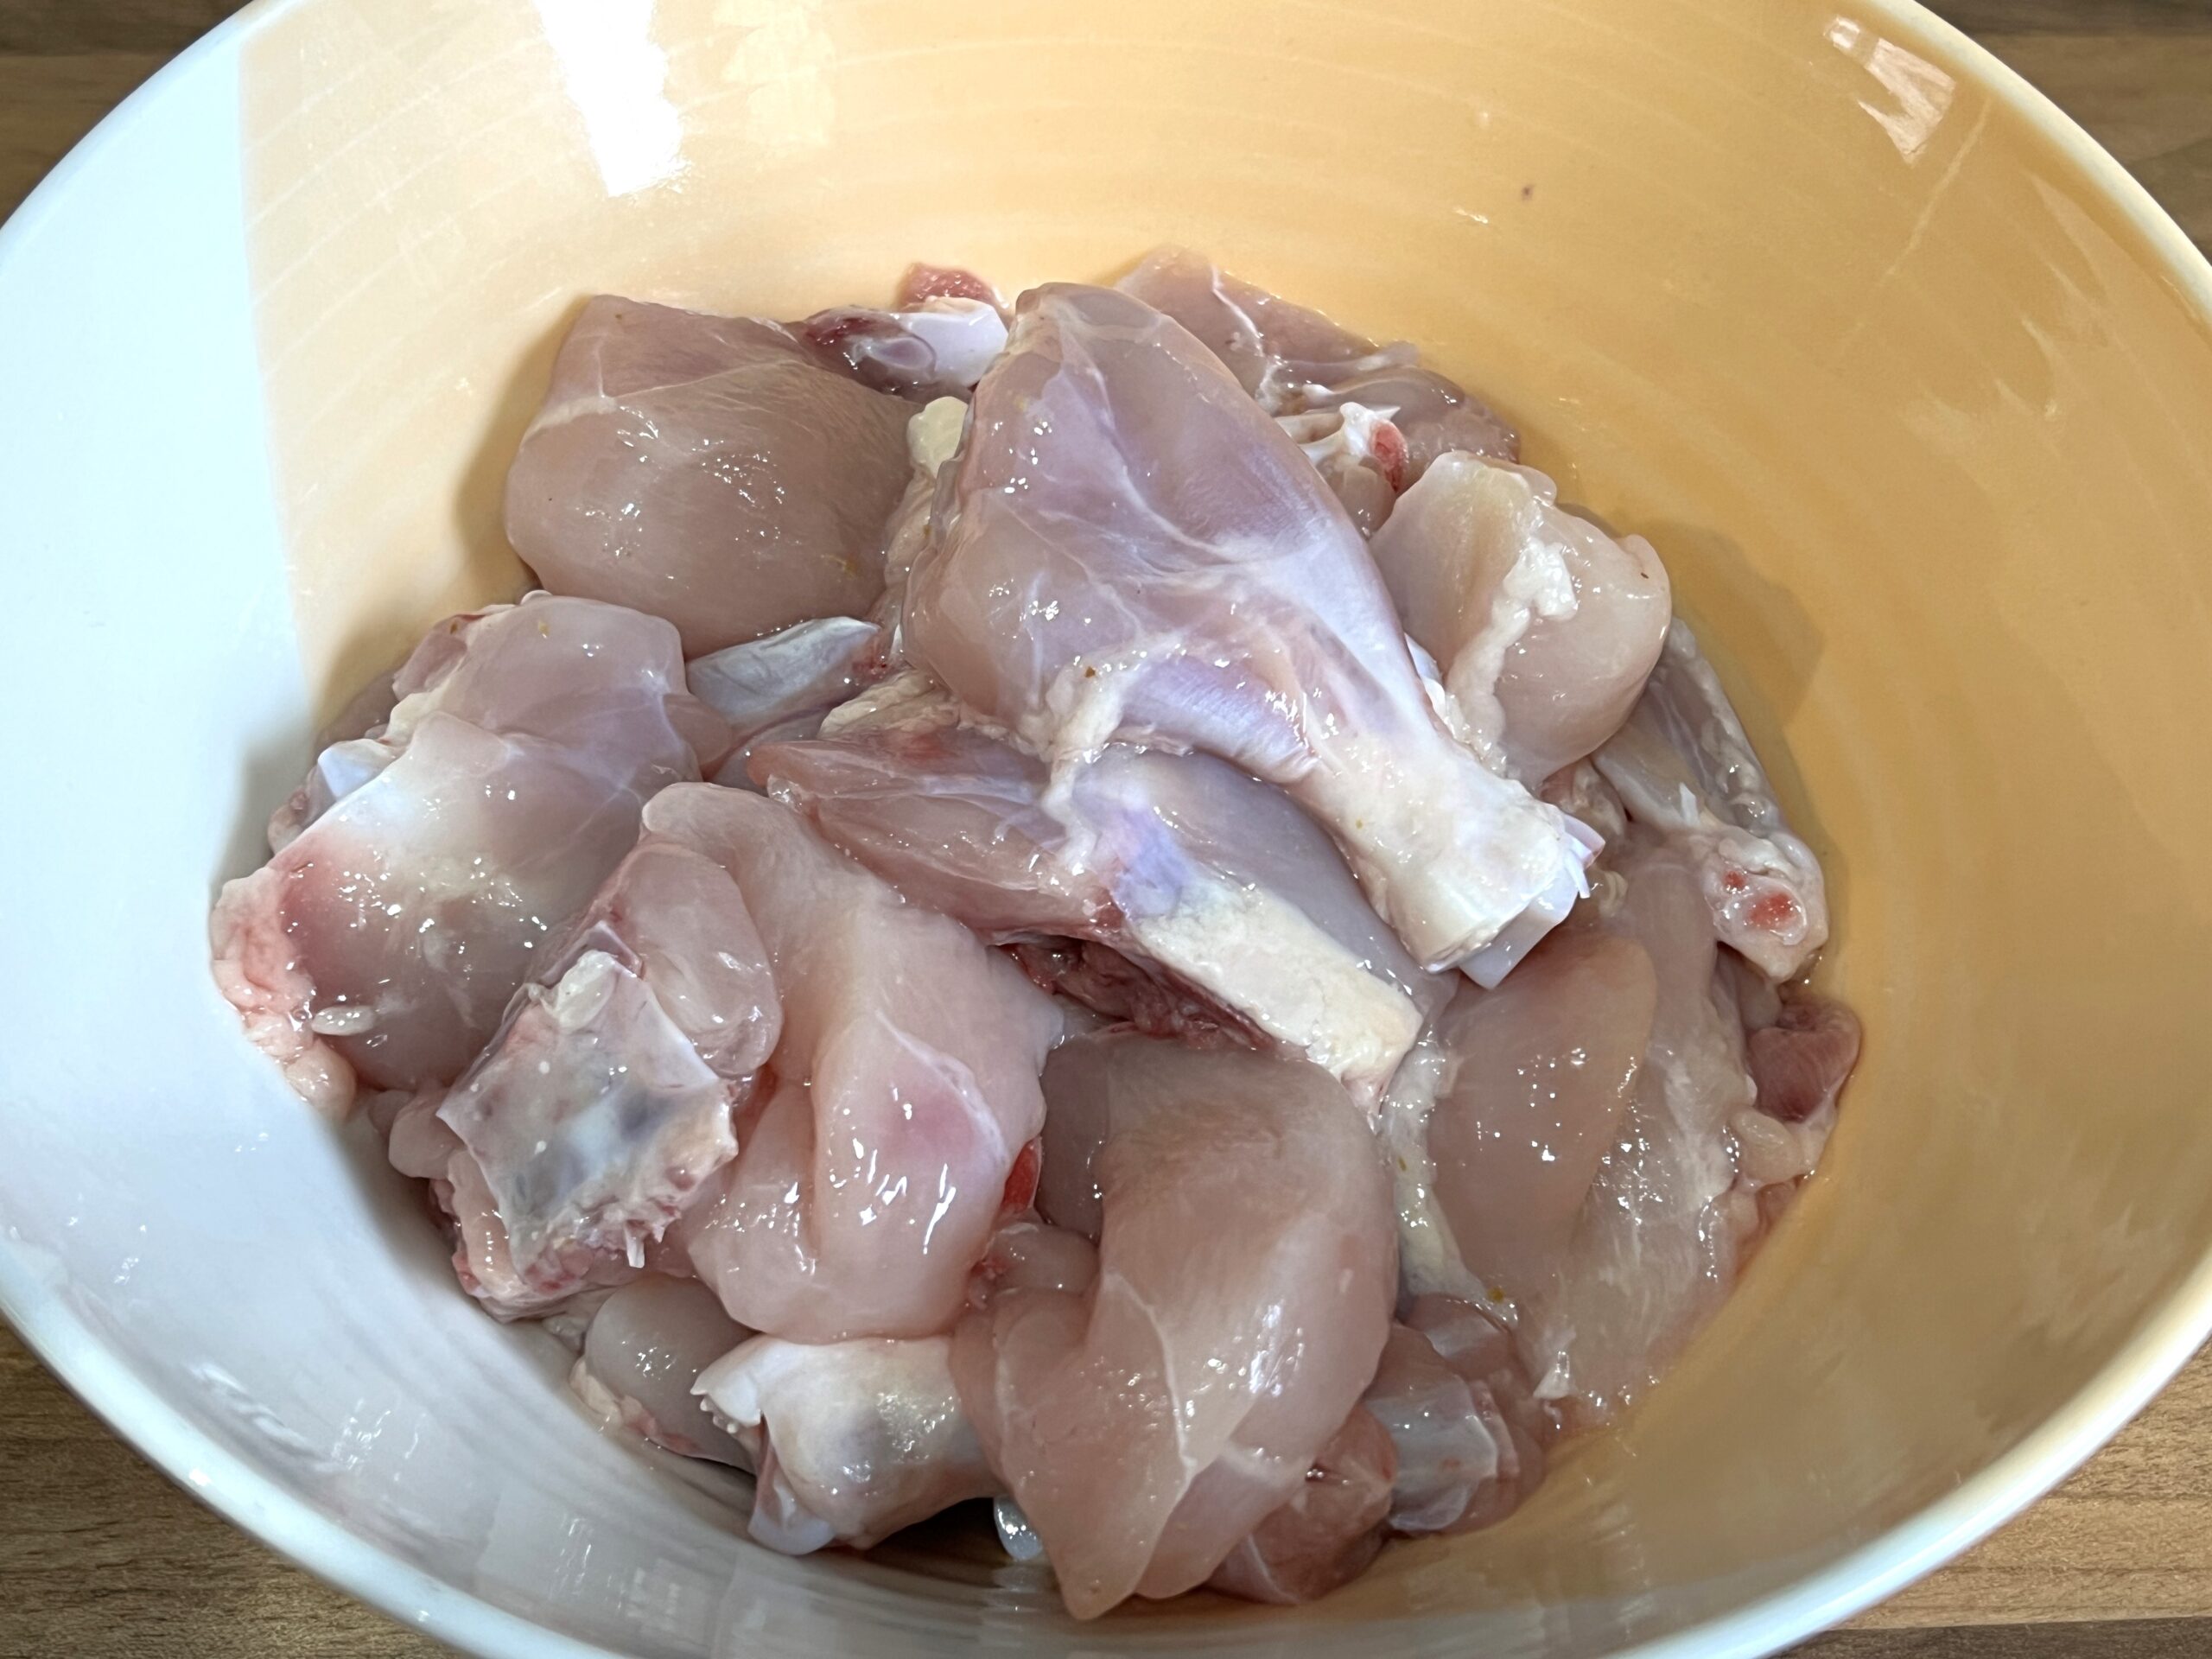 Bihari Chicken Recipe